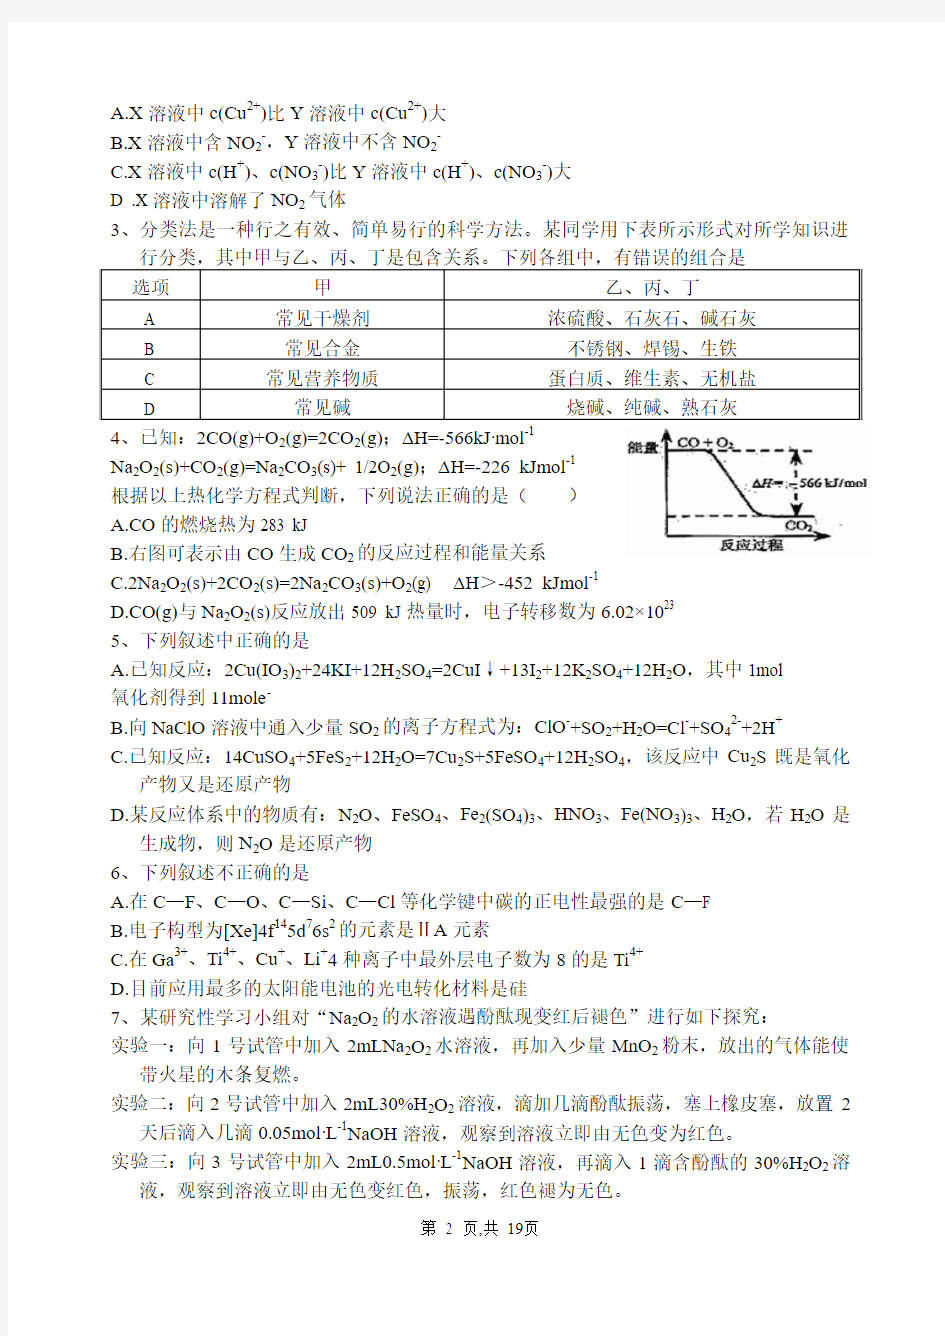 2010-2011年湖北省高中化学竞赛初赛试题及答案(Word版)